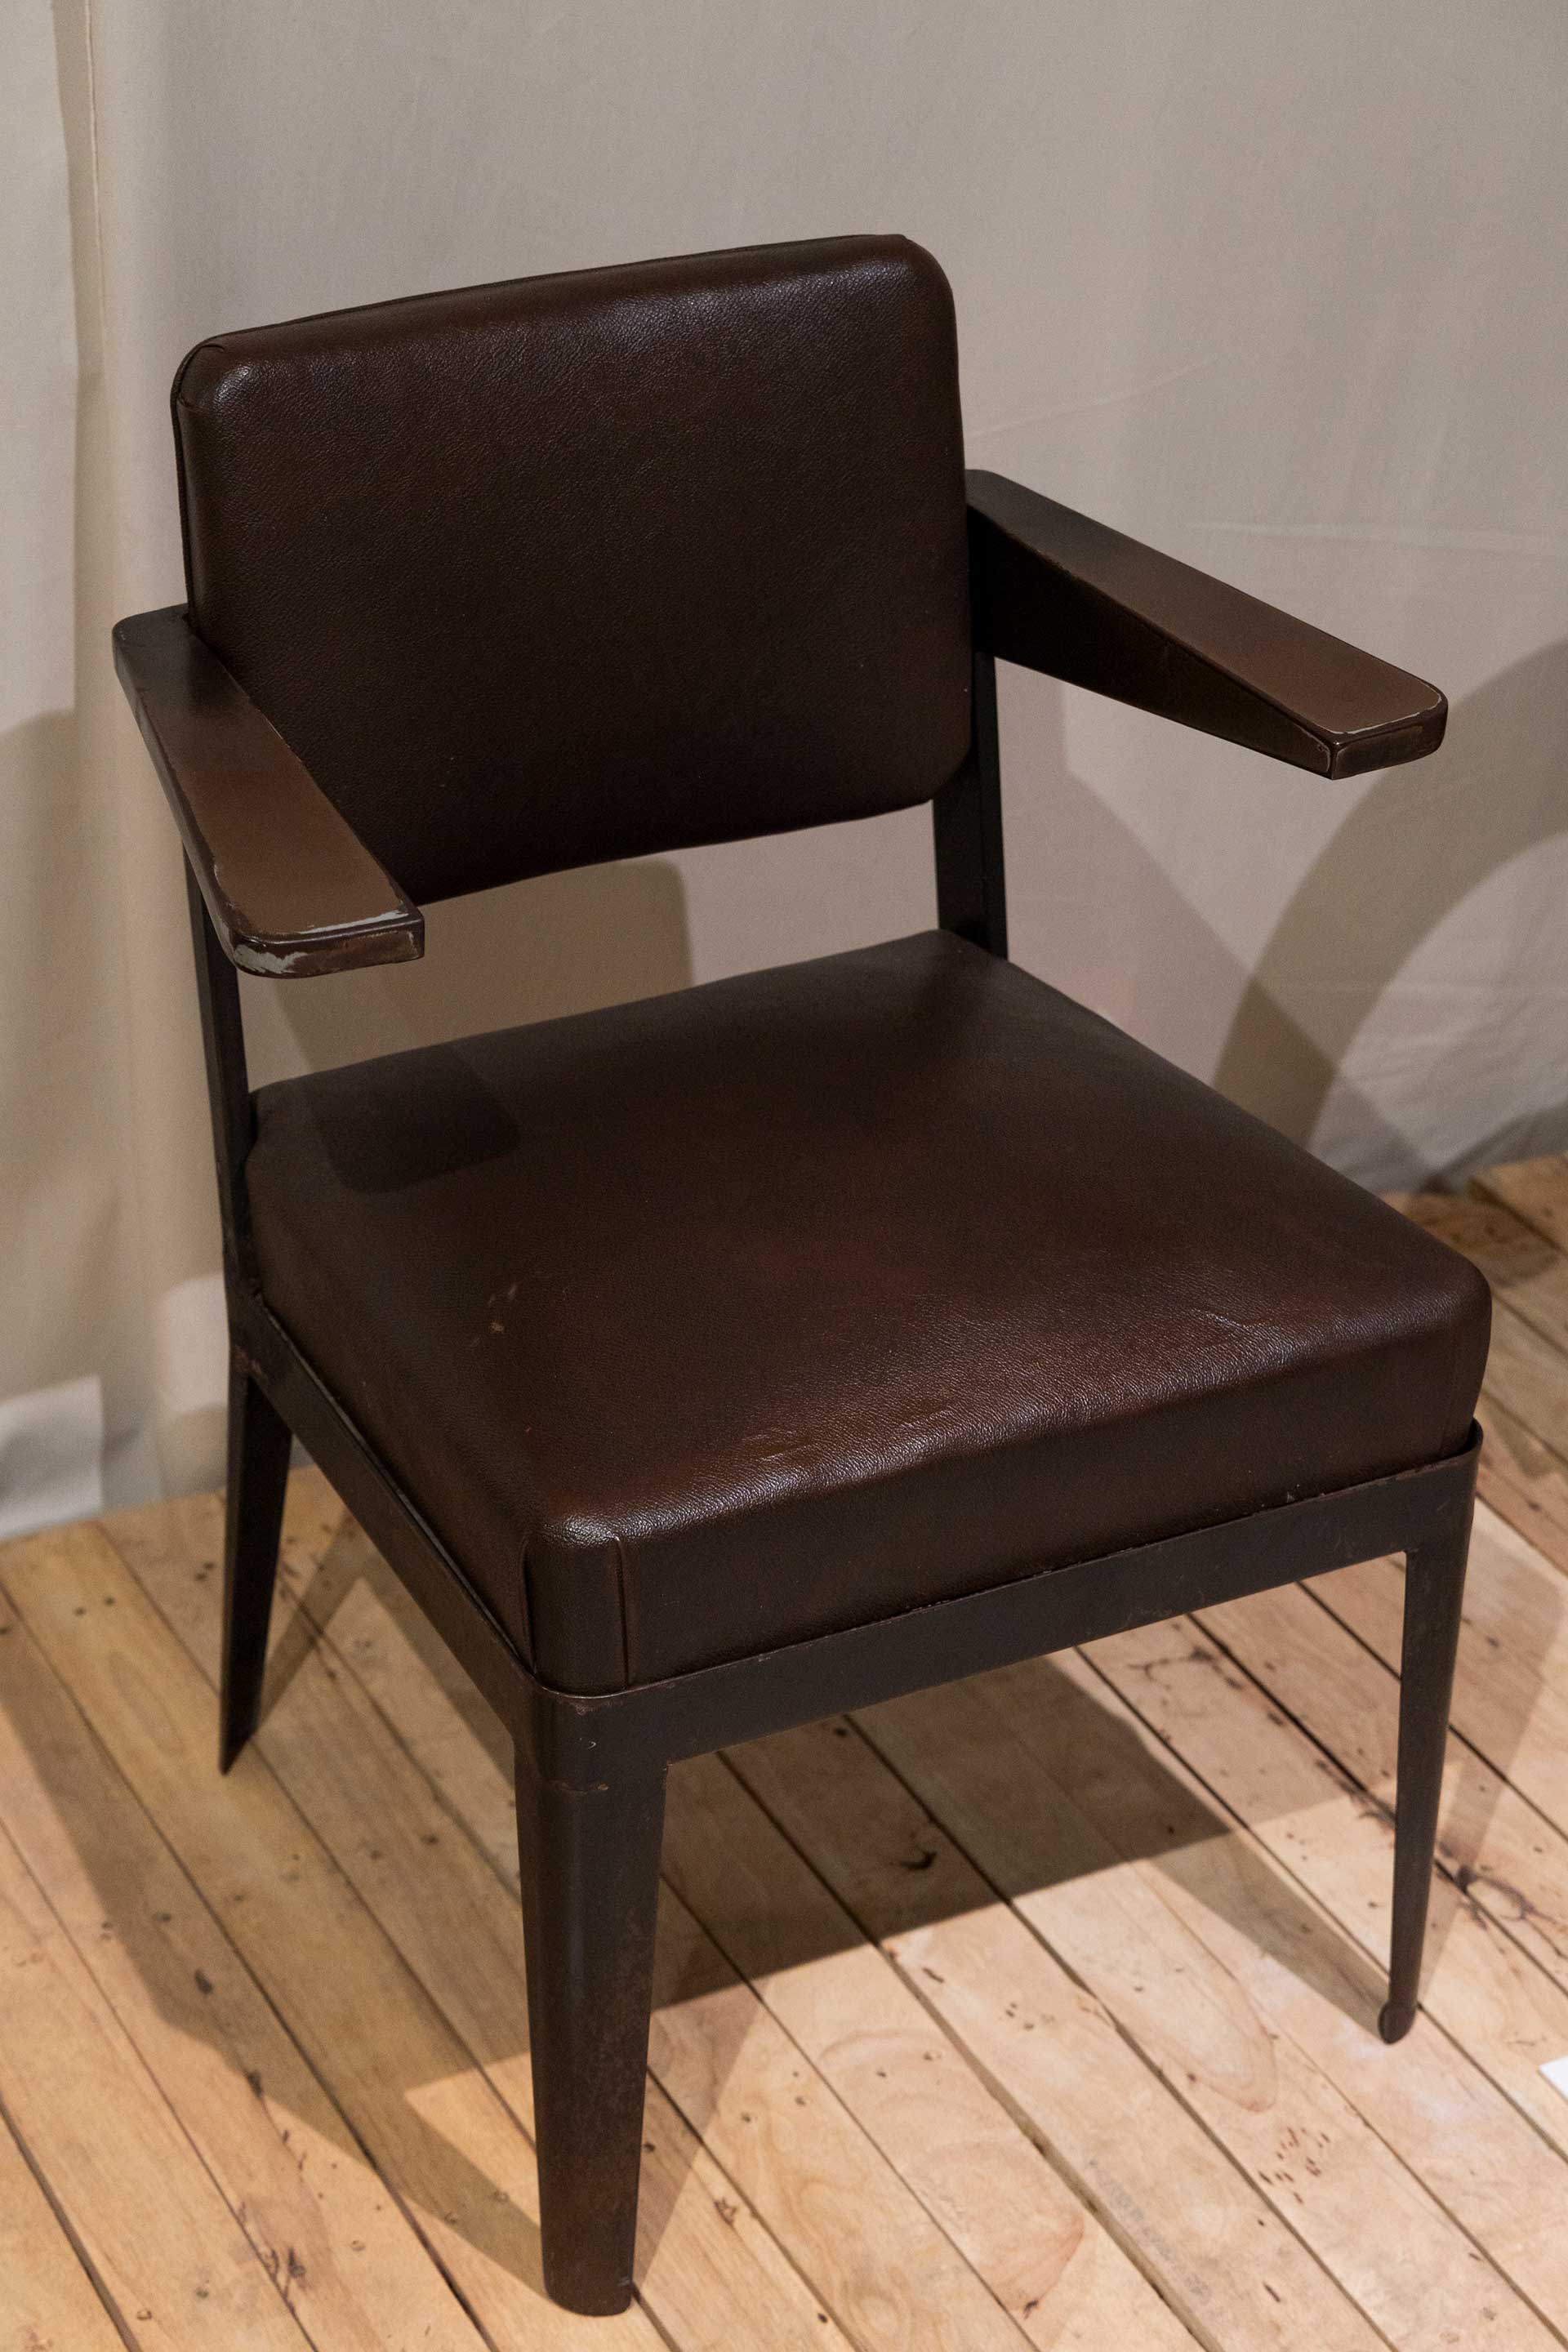 フランスの建築家、デザイナーであるジャン・プルーヴェの初期作品“arm chair CPDE”。1930年代の制作で、プルーヴェのオフィス家具の基礎となった。